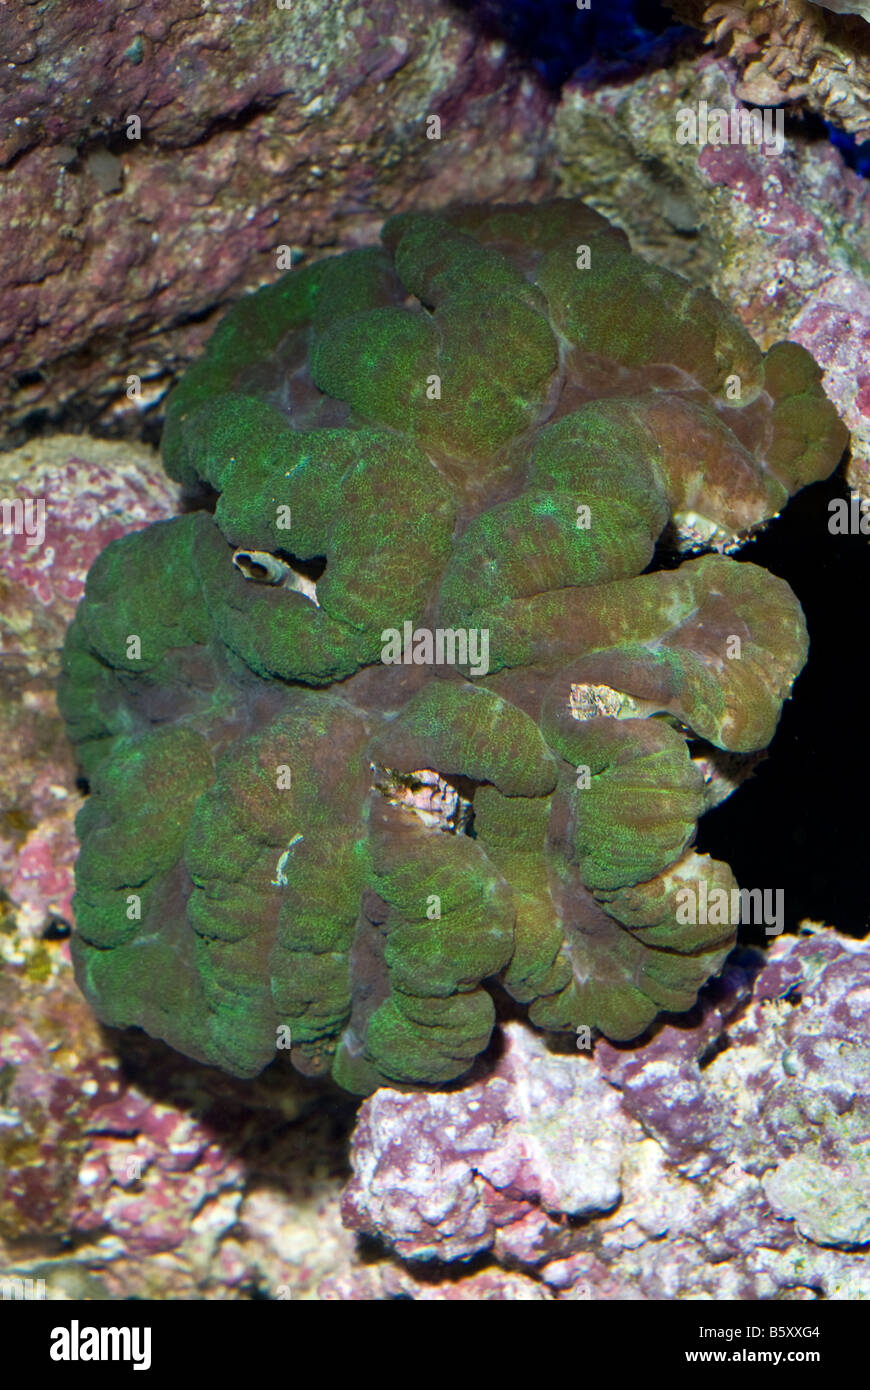 Lobophyllia hataii, coralli duri di Indo-pacifico, Celenterata Foto Stock